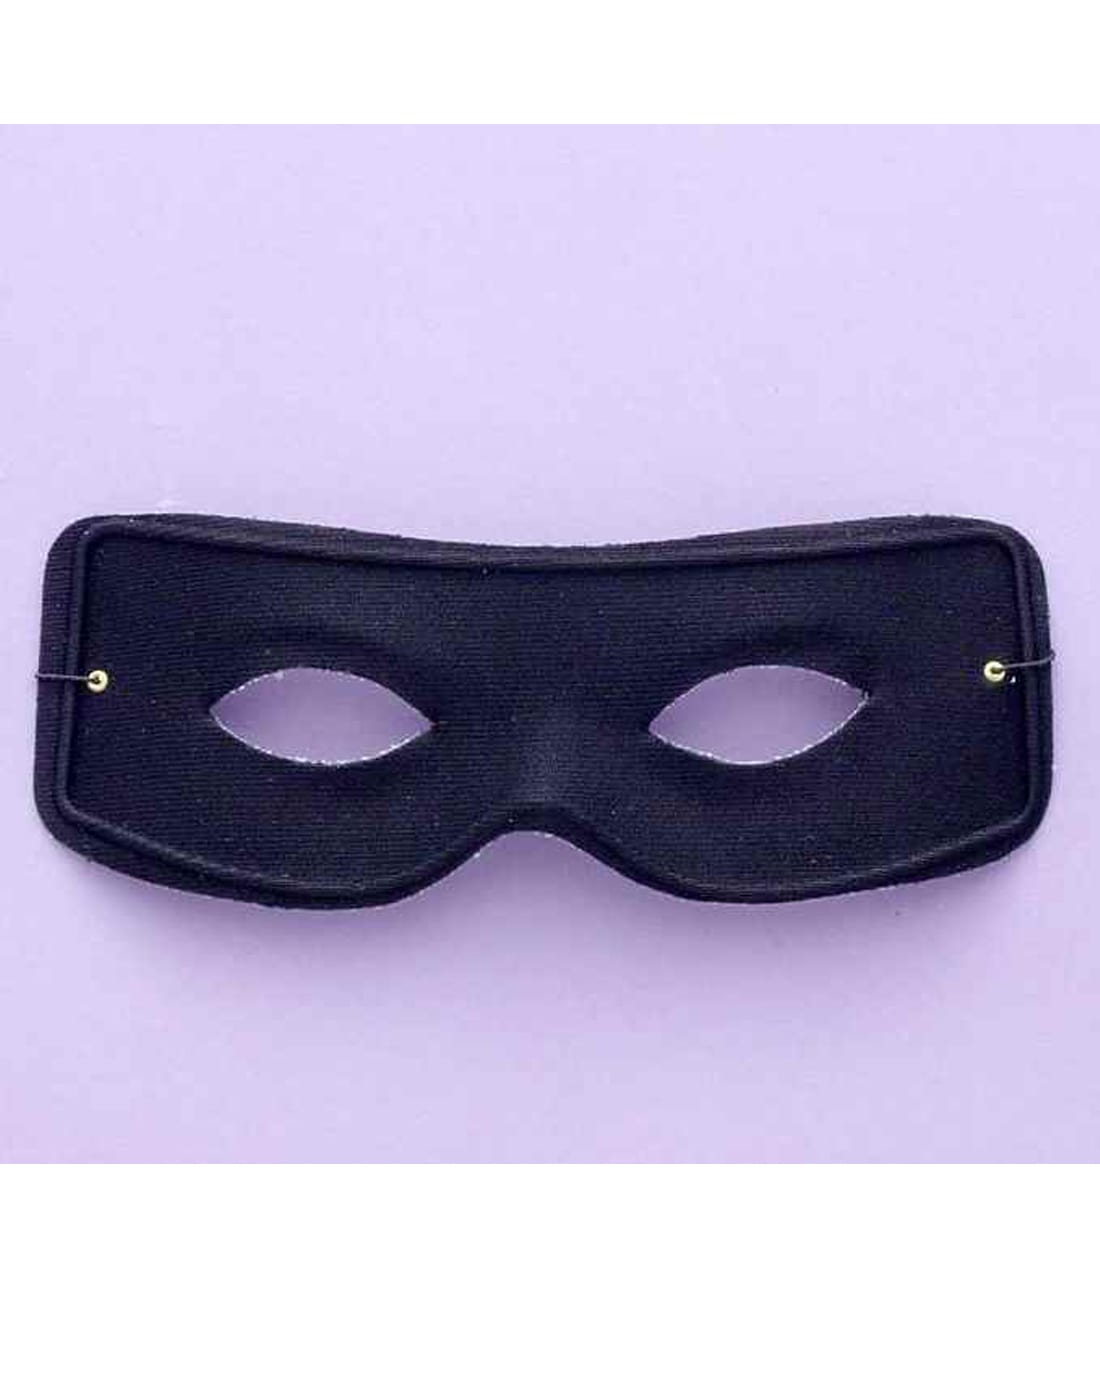 Masked Man Mask w/ Ties 10